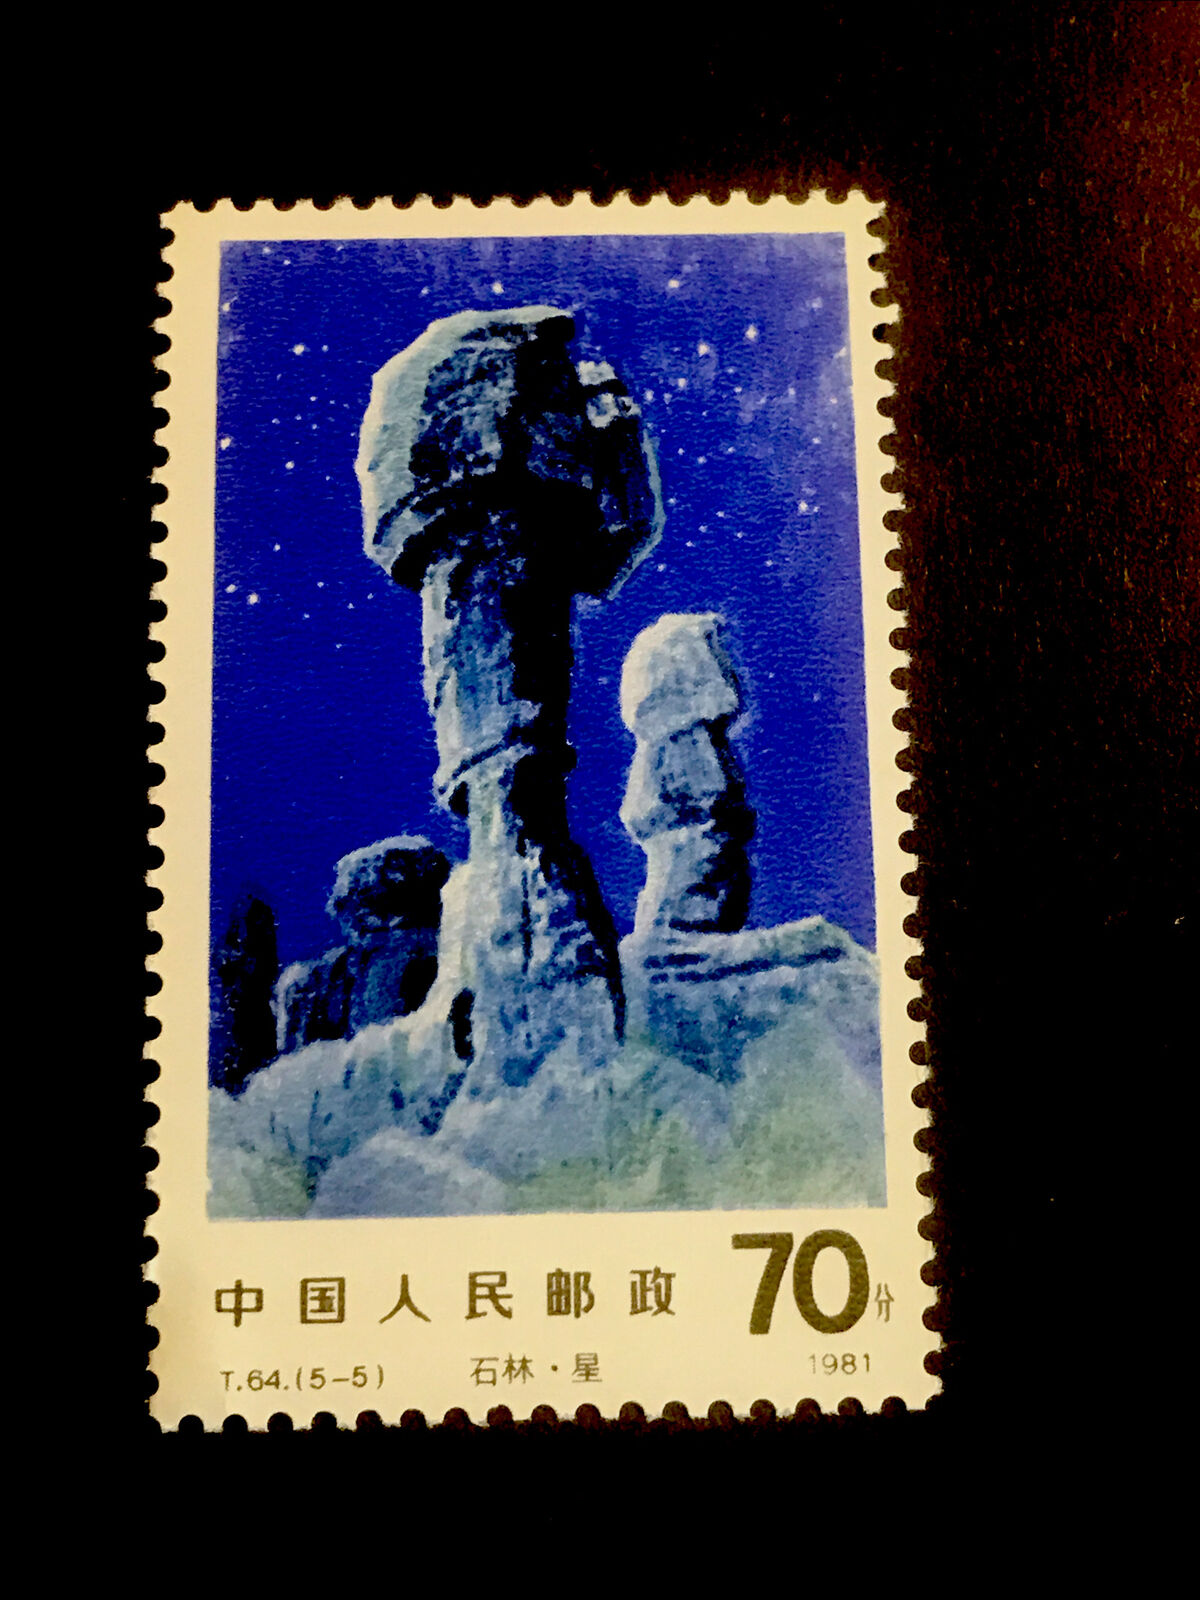 One China Stamp